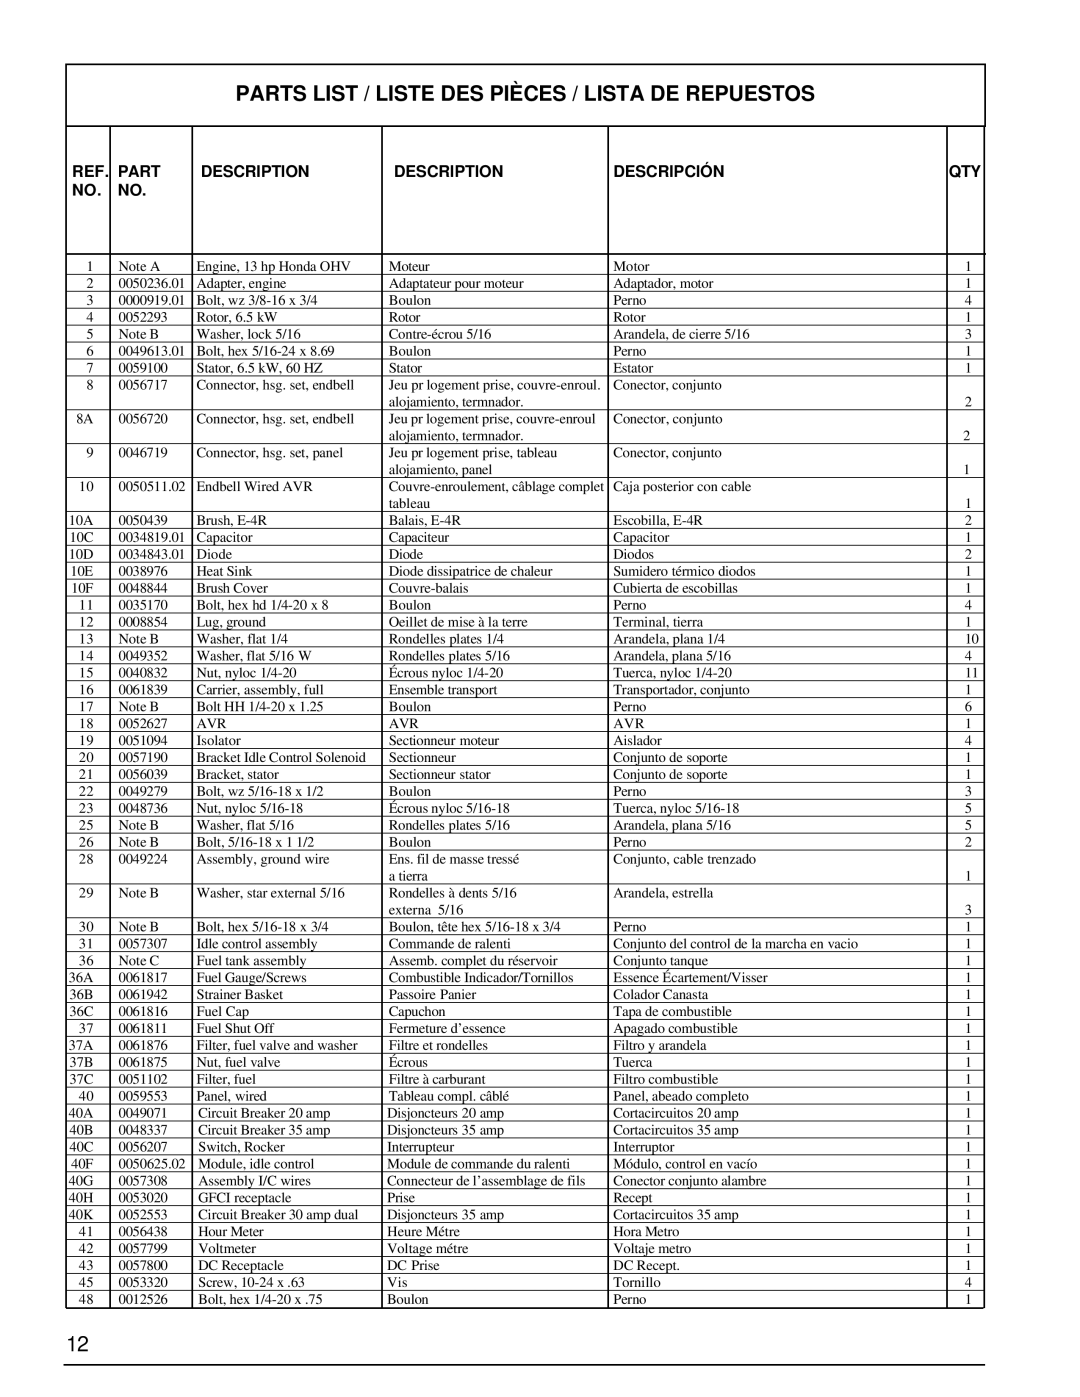 Powermate PC0496504.18 manual Parts List / Liste Des Pièces / Lista De Repuestos, Description, Descripción 